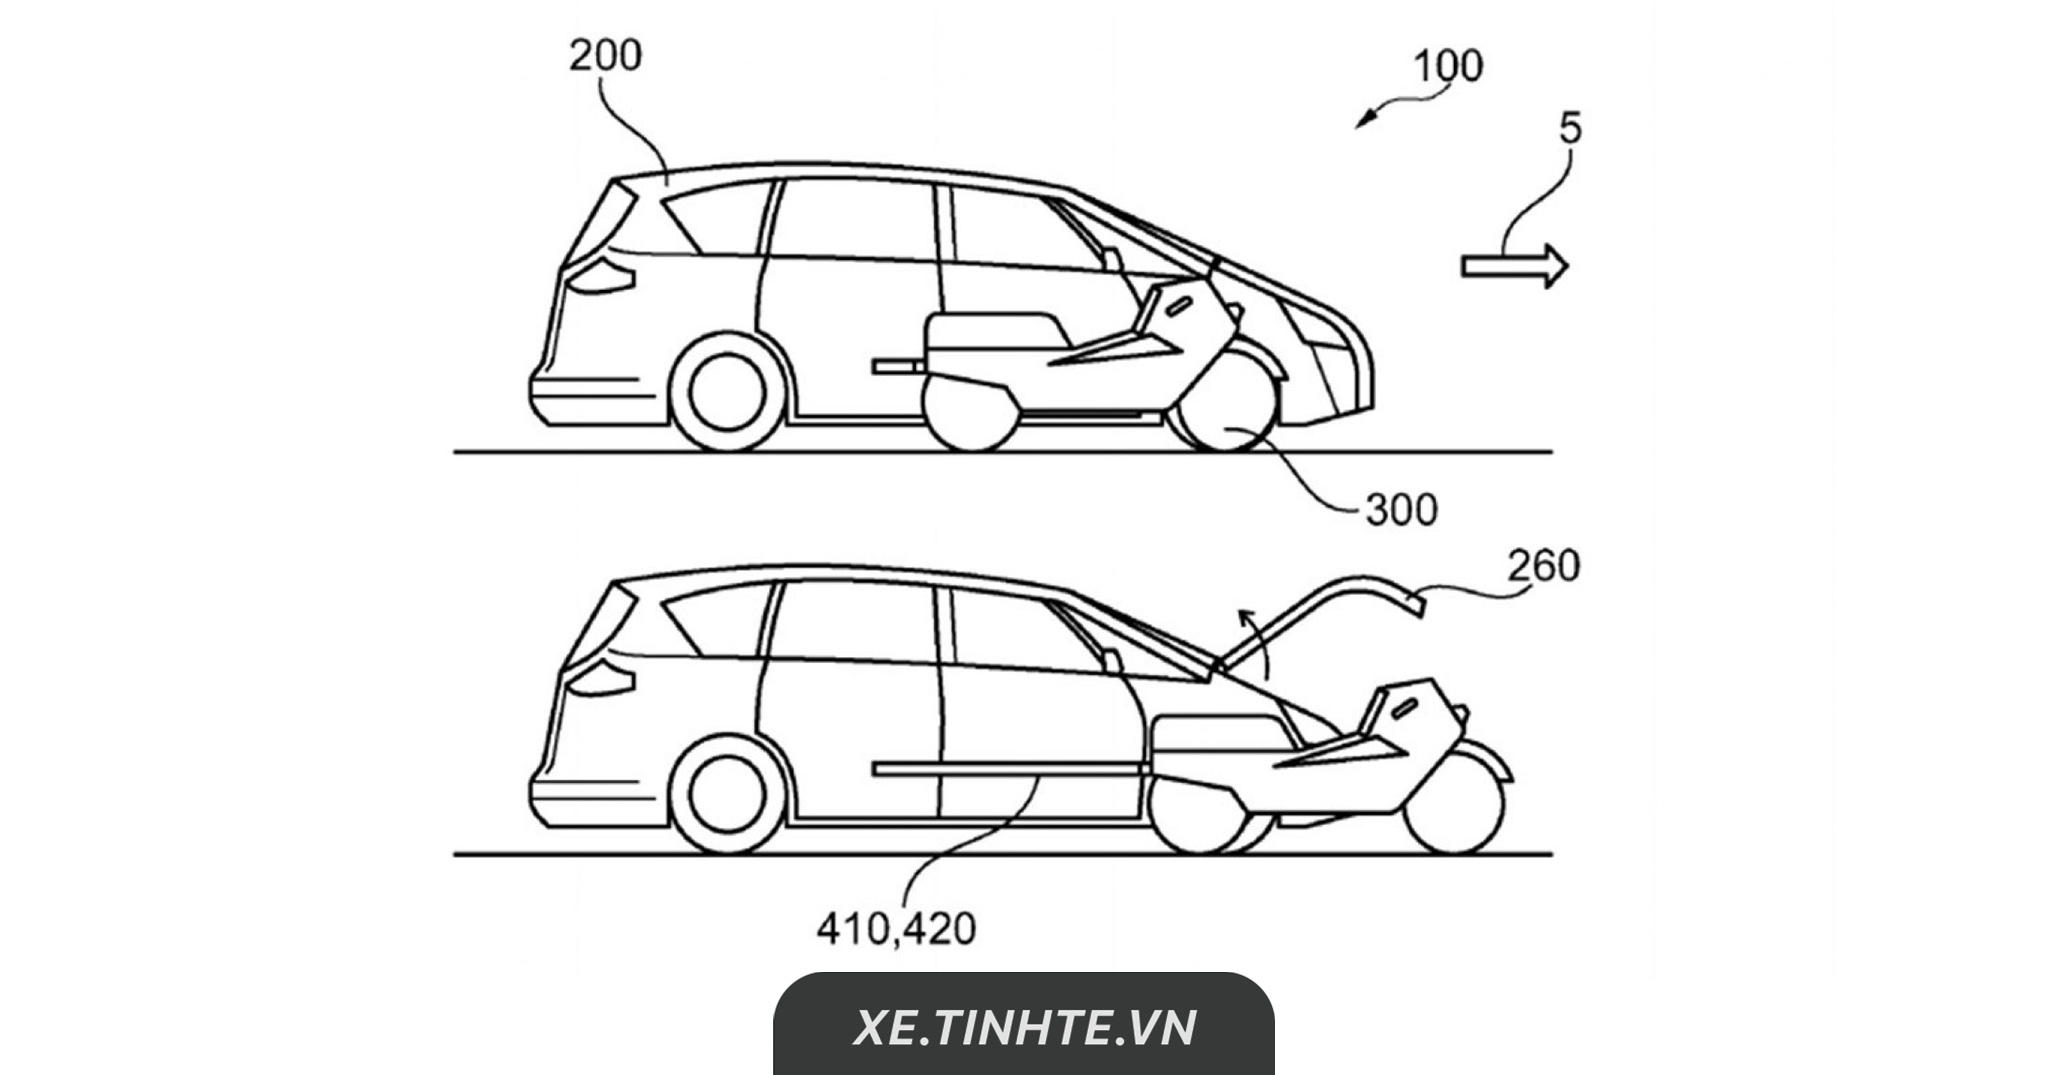 Ford đăng ký bằng sáng chế xe ô tô có thể tách thành mô tô điện